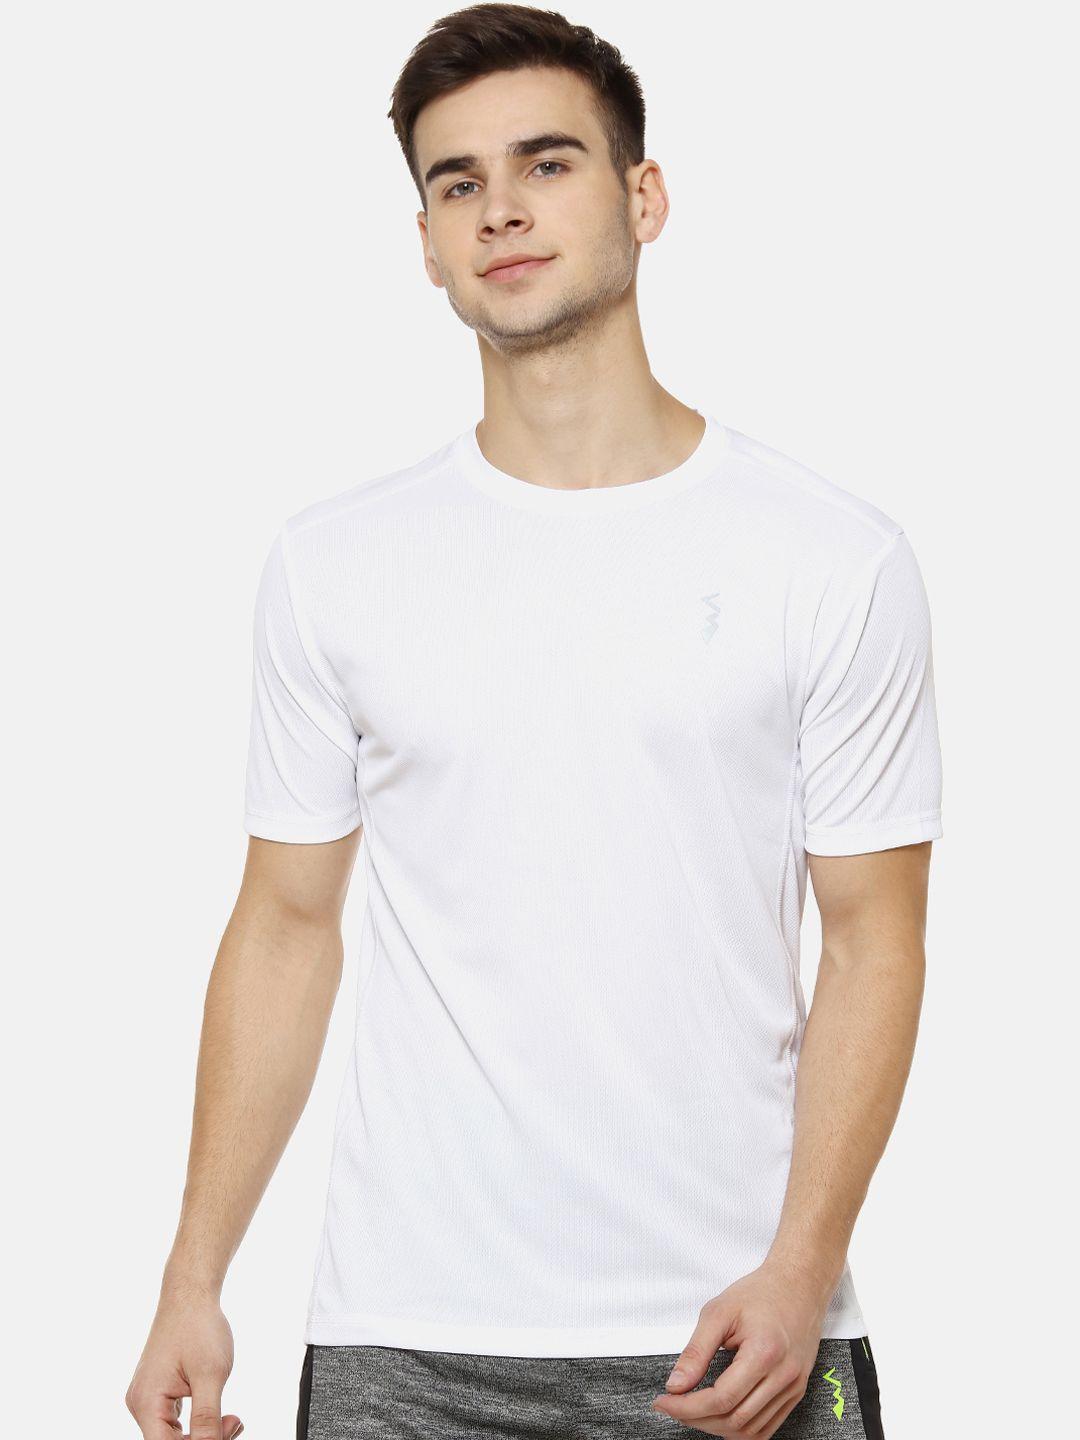 Campus Sutra Men White Solid Round Neck T-shirt